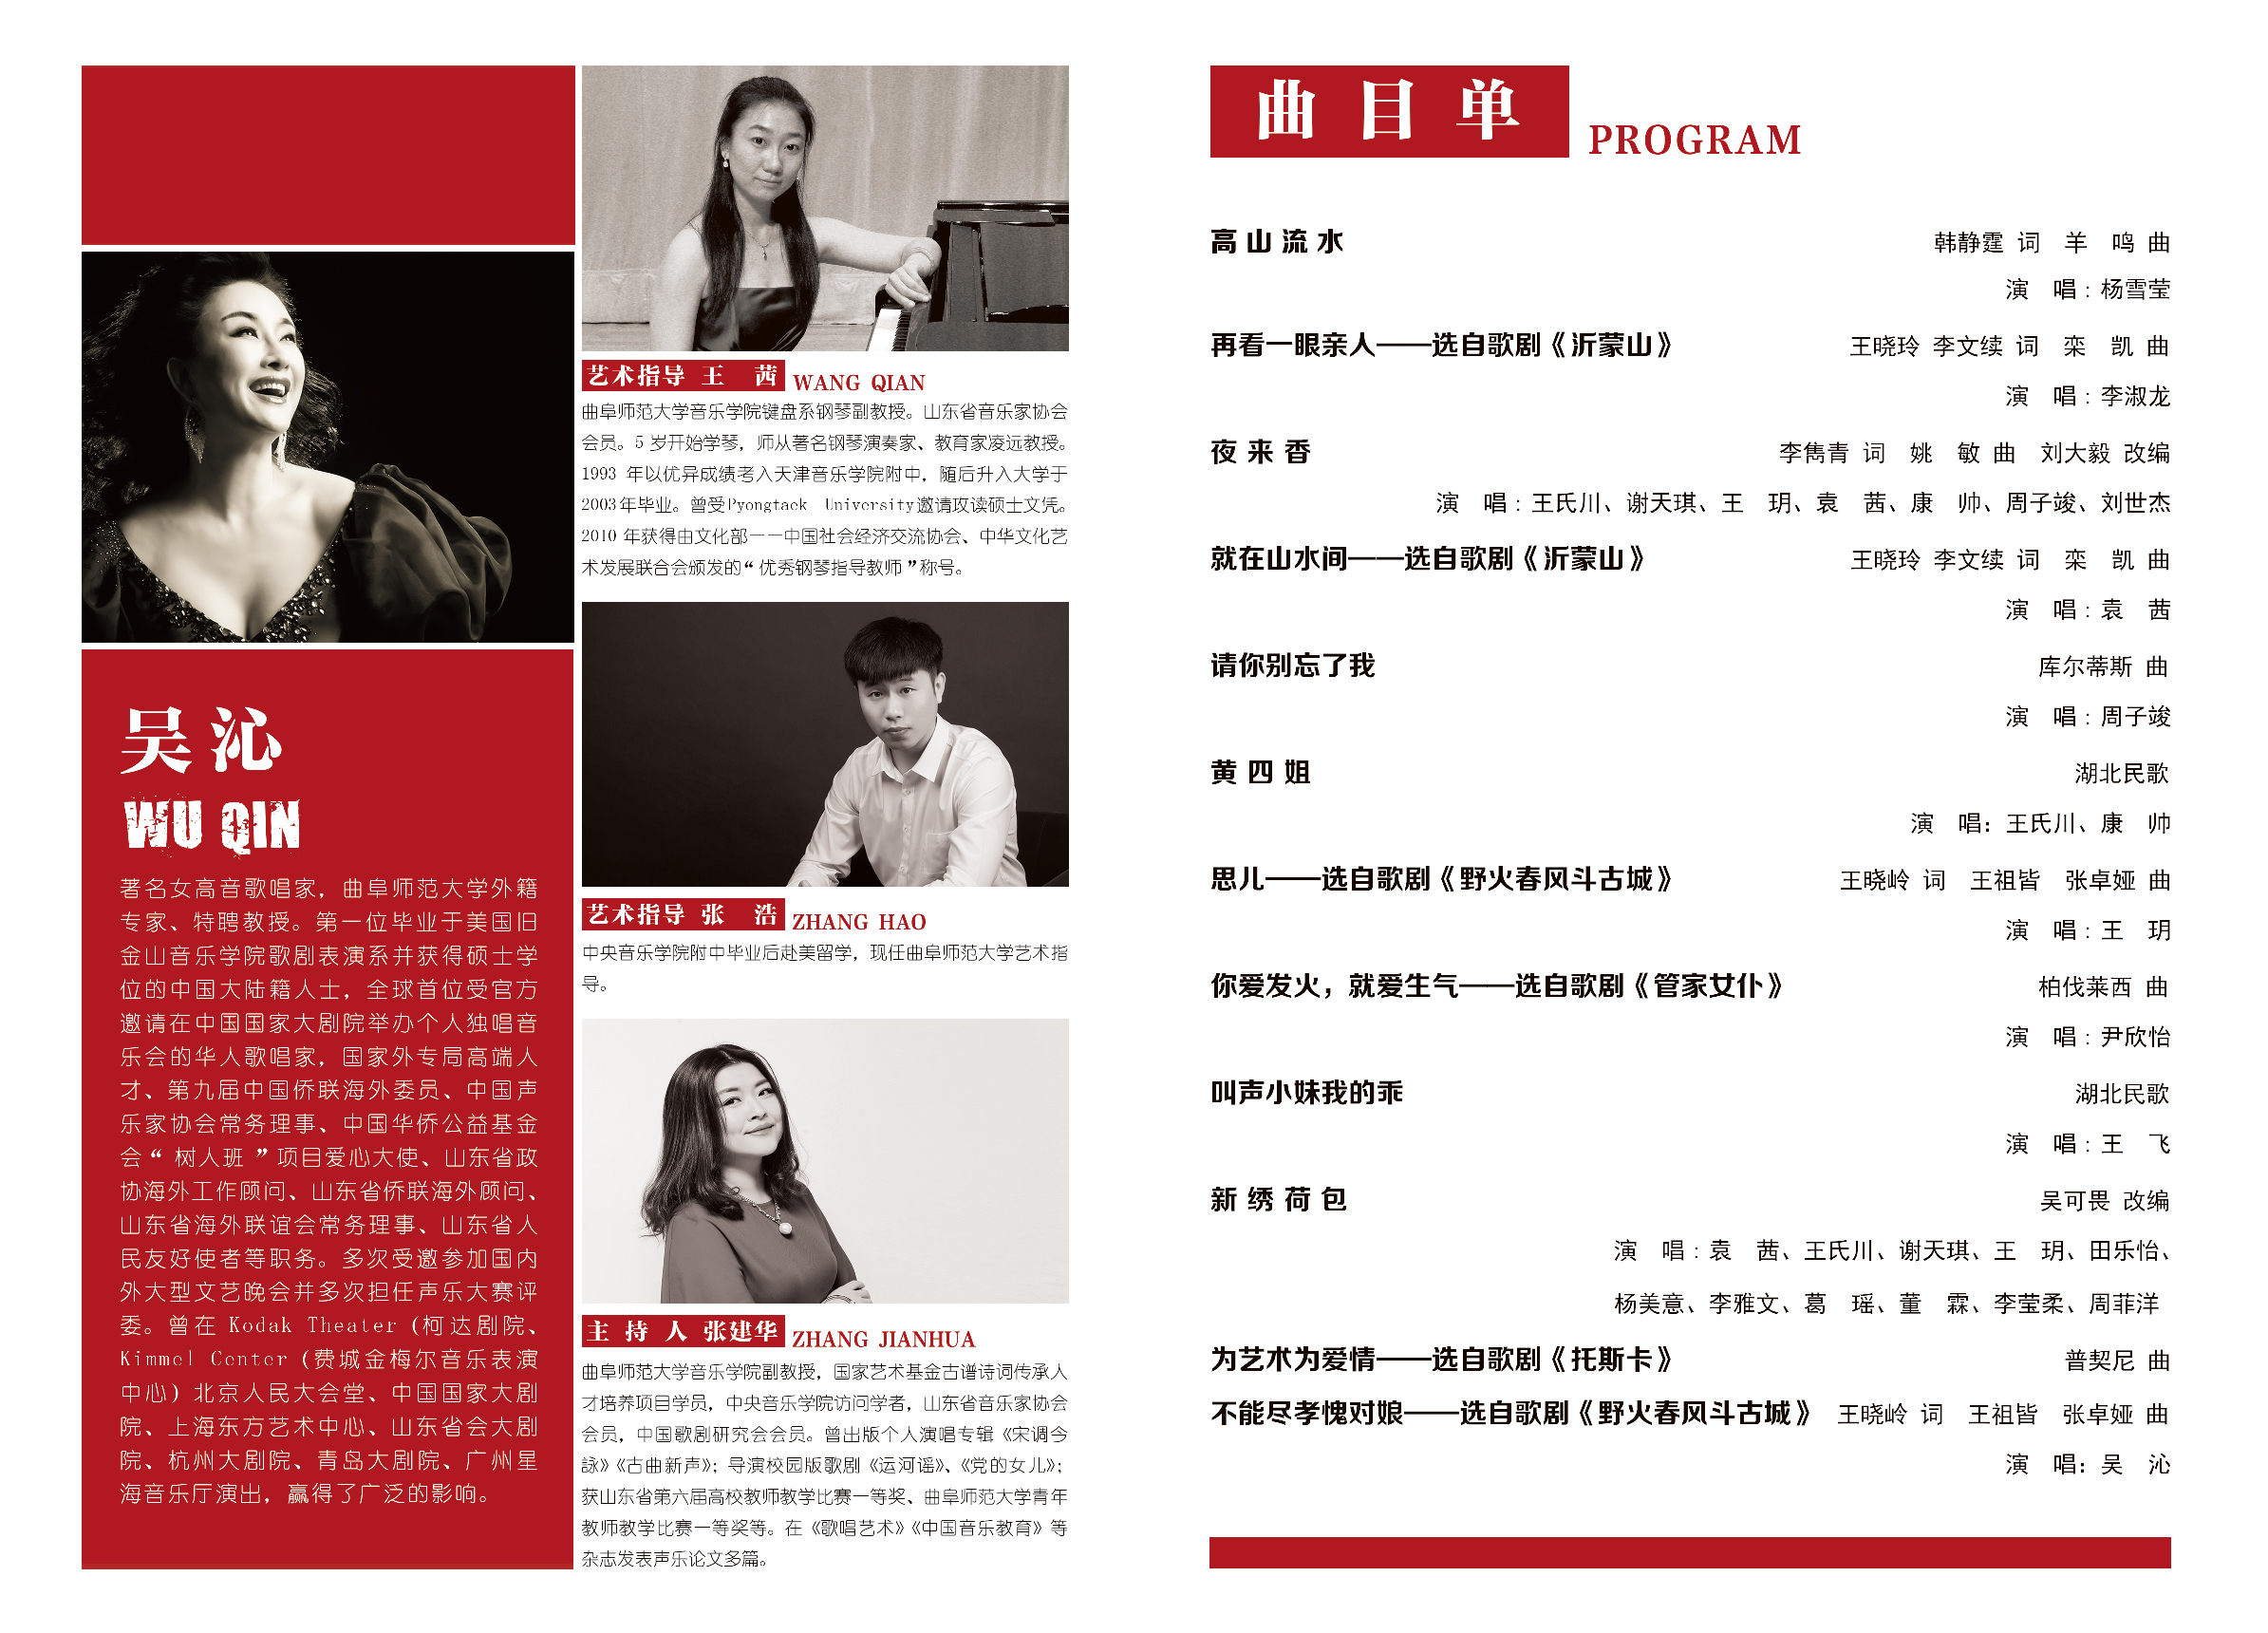 著名歌唱家吴沁教授师生音乐会11月6日将在山东日照精彩上演